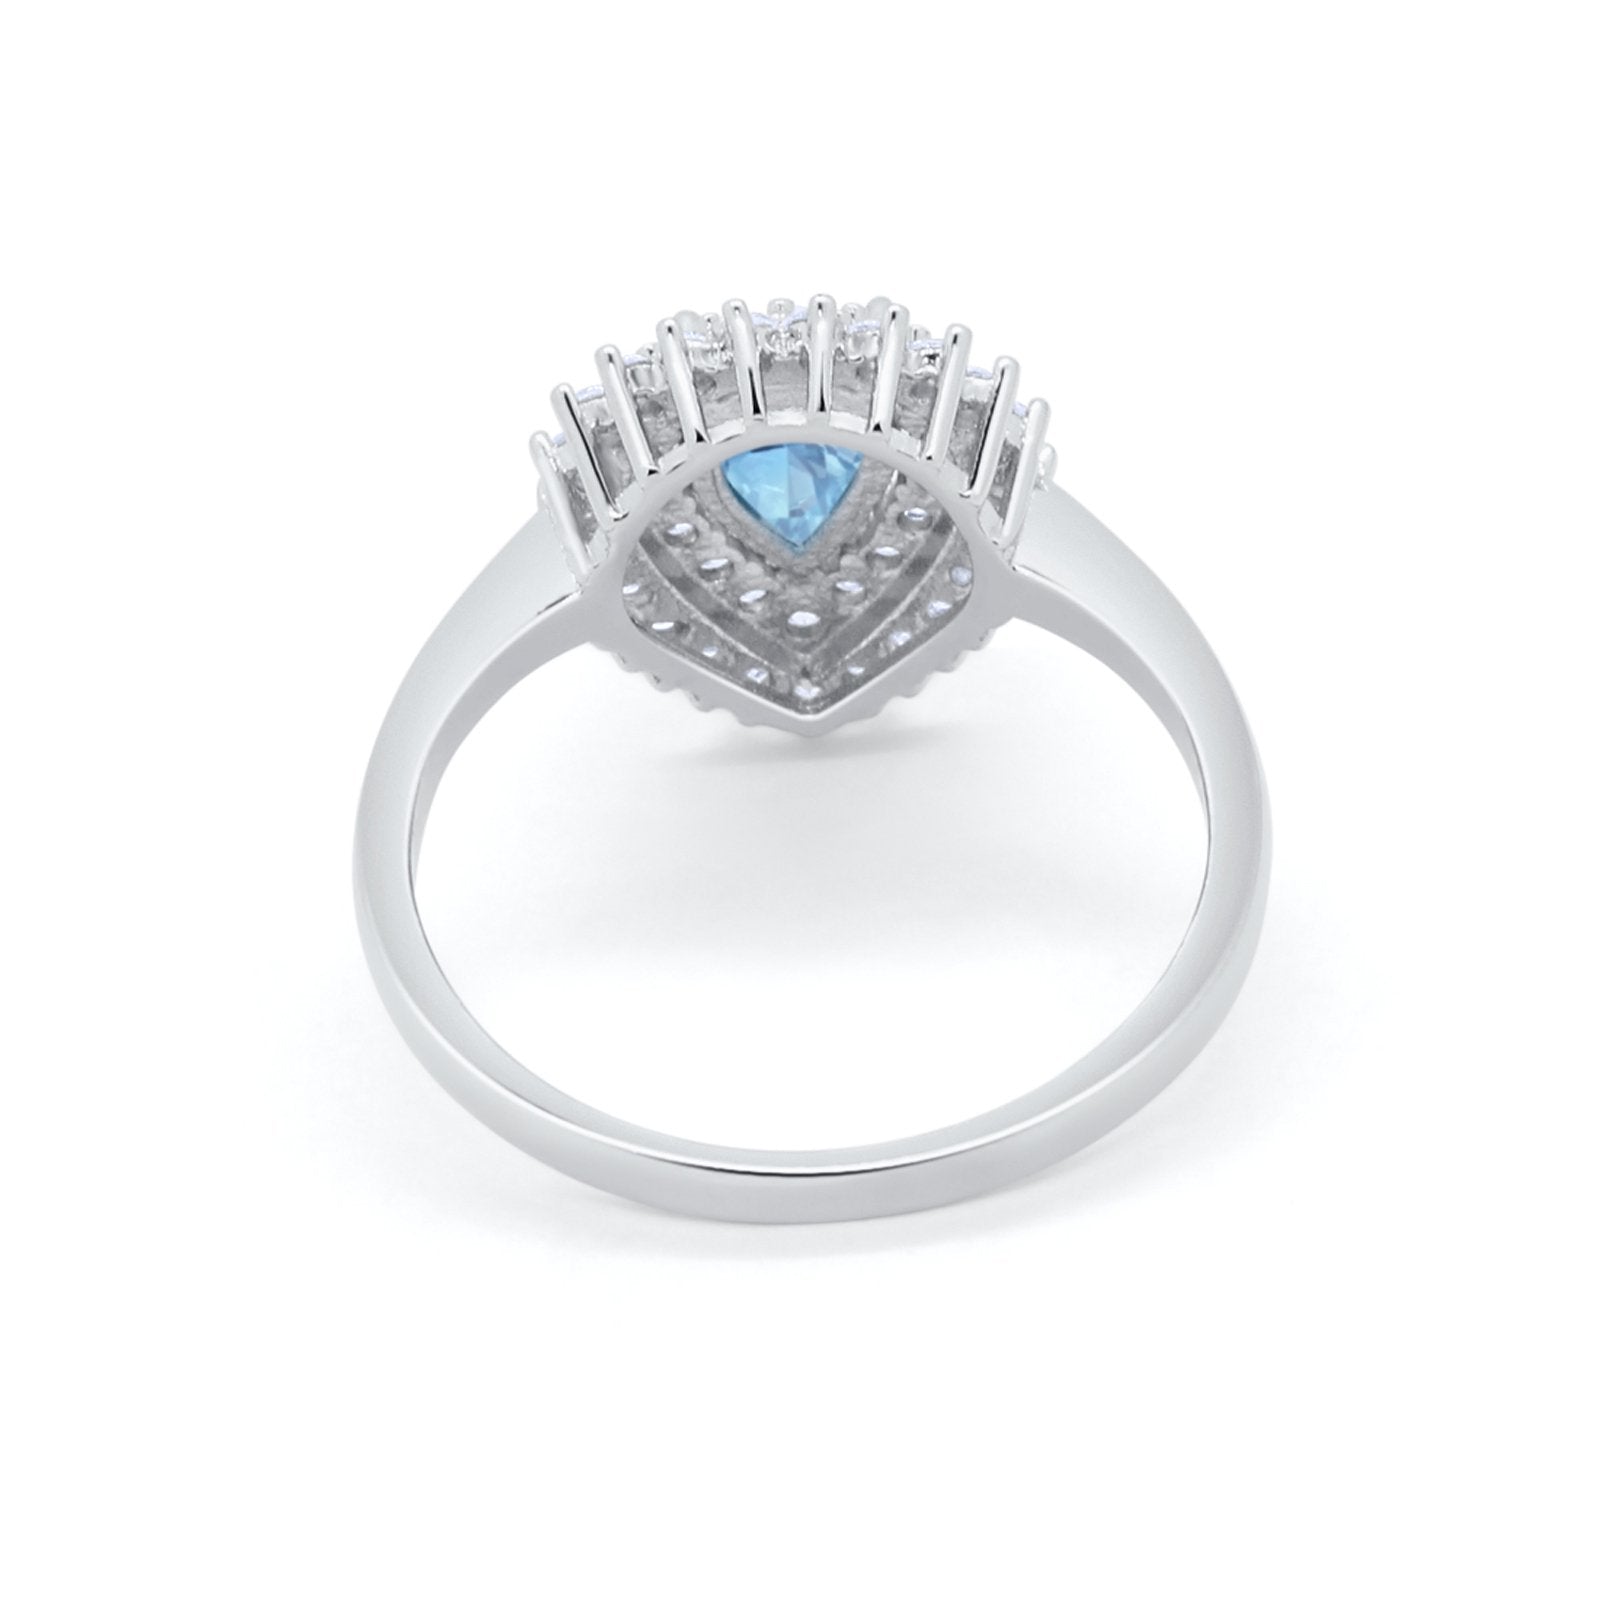 Teardrop Wedding Ring Simulated Aquamarine CZ 925 Sterling Silver